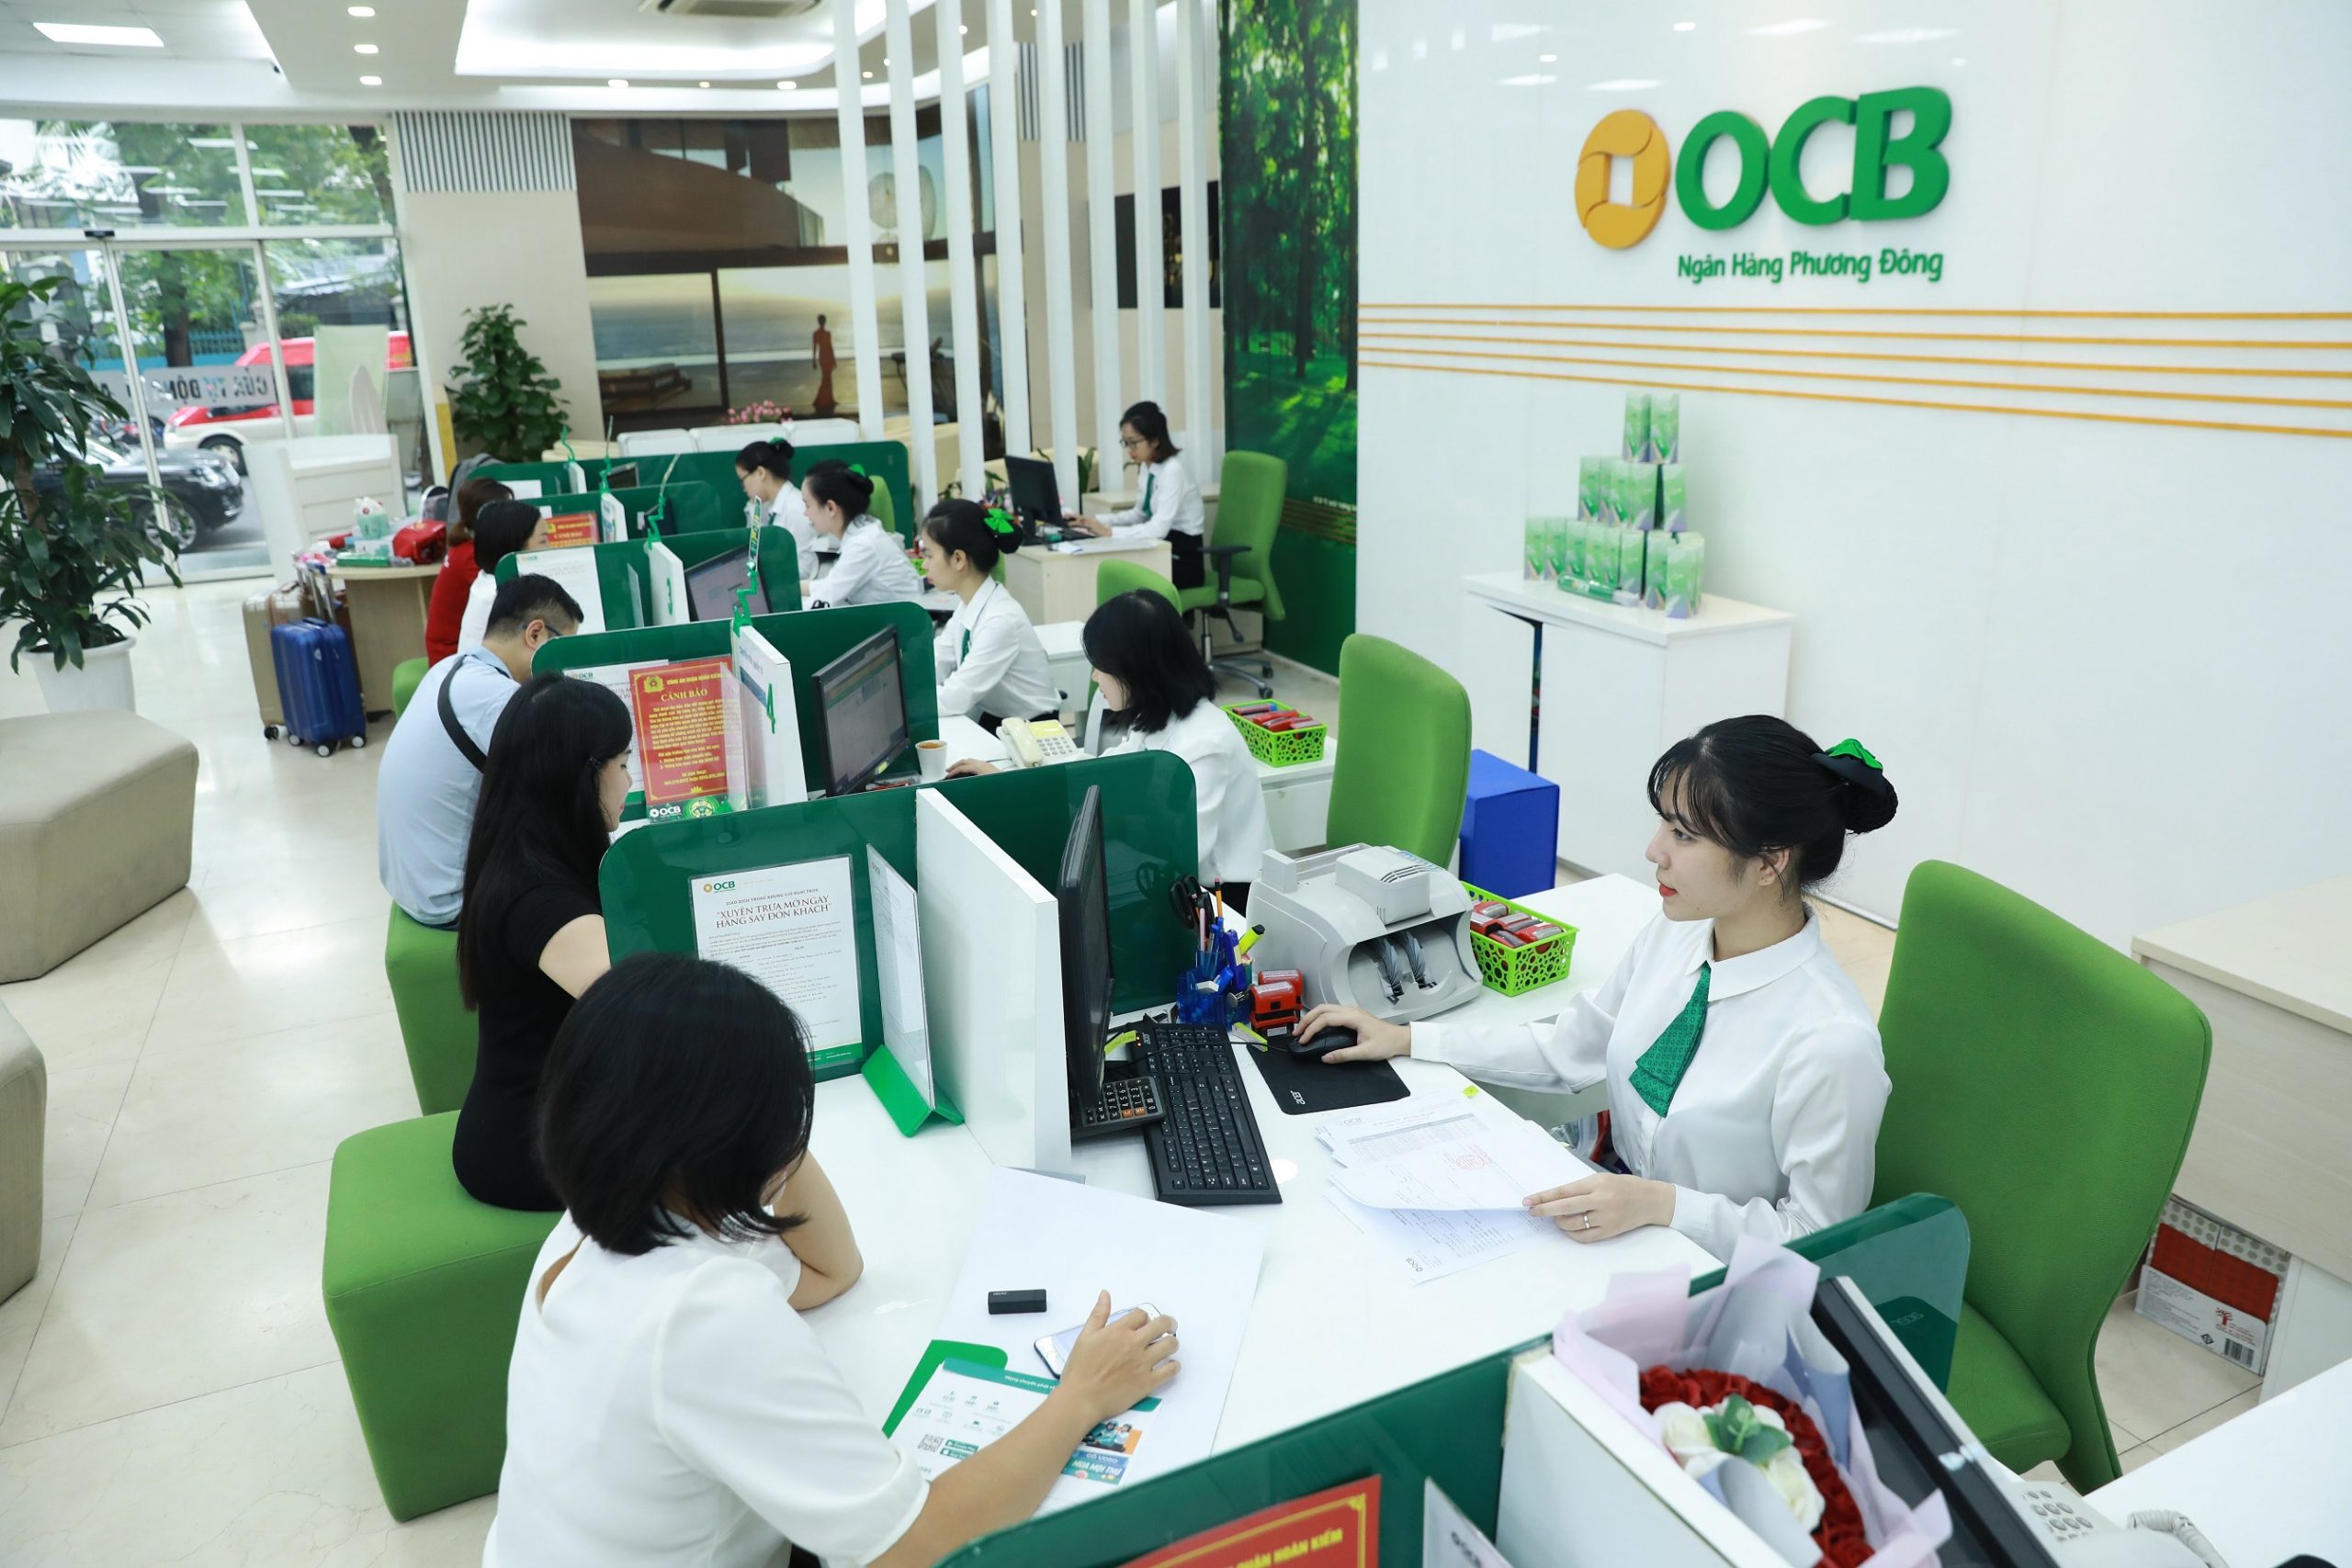 Chuyển đổi số các hoạt động của ngân hàng là chìa khóa giúp OCB đạt được những kết quả kinh doanh khả quan